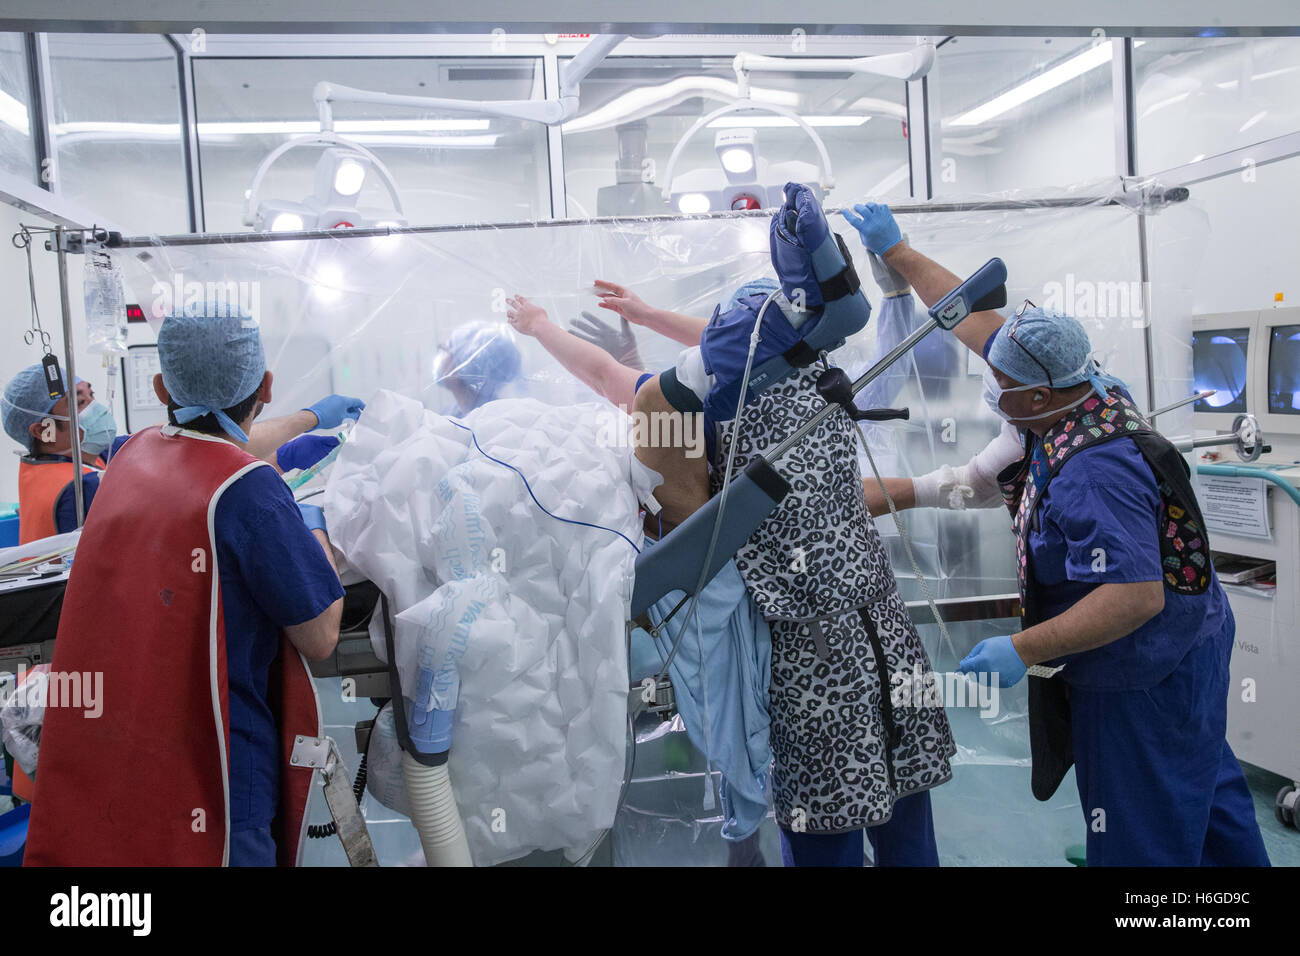 Le personnel de l'hôpital dans une salle d'opération la préparation d'un patient pour une opération au genou Banque D'Images